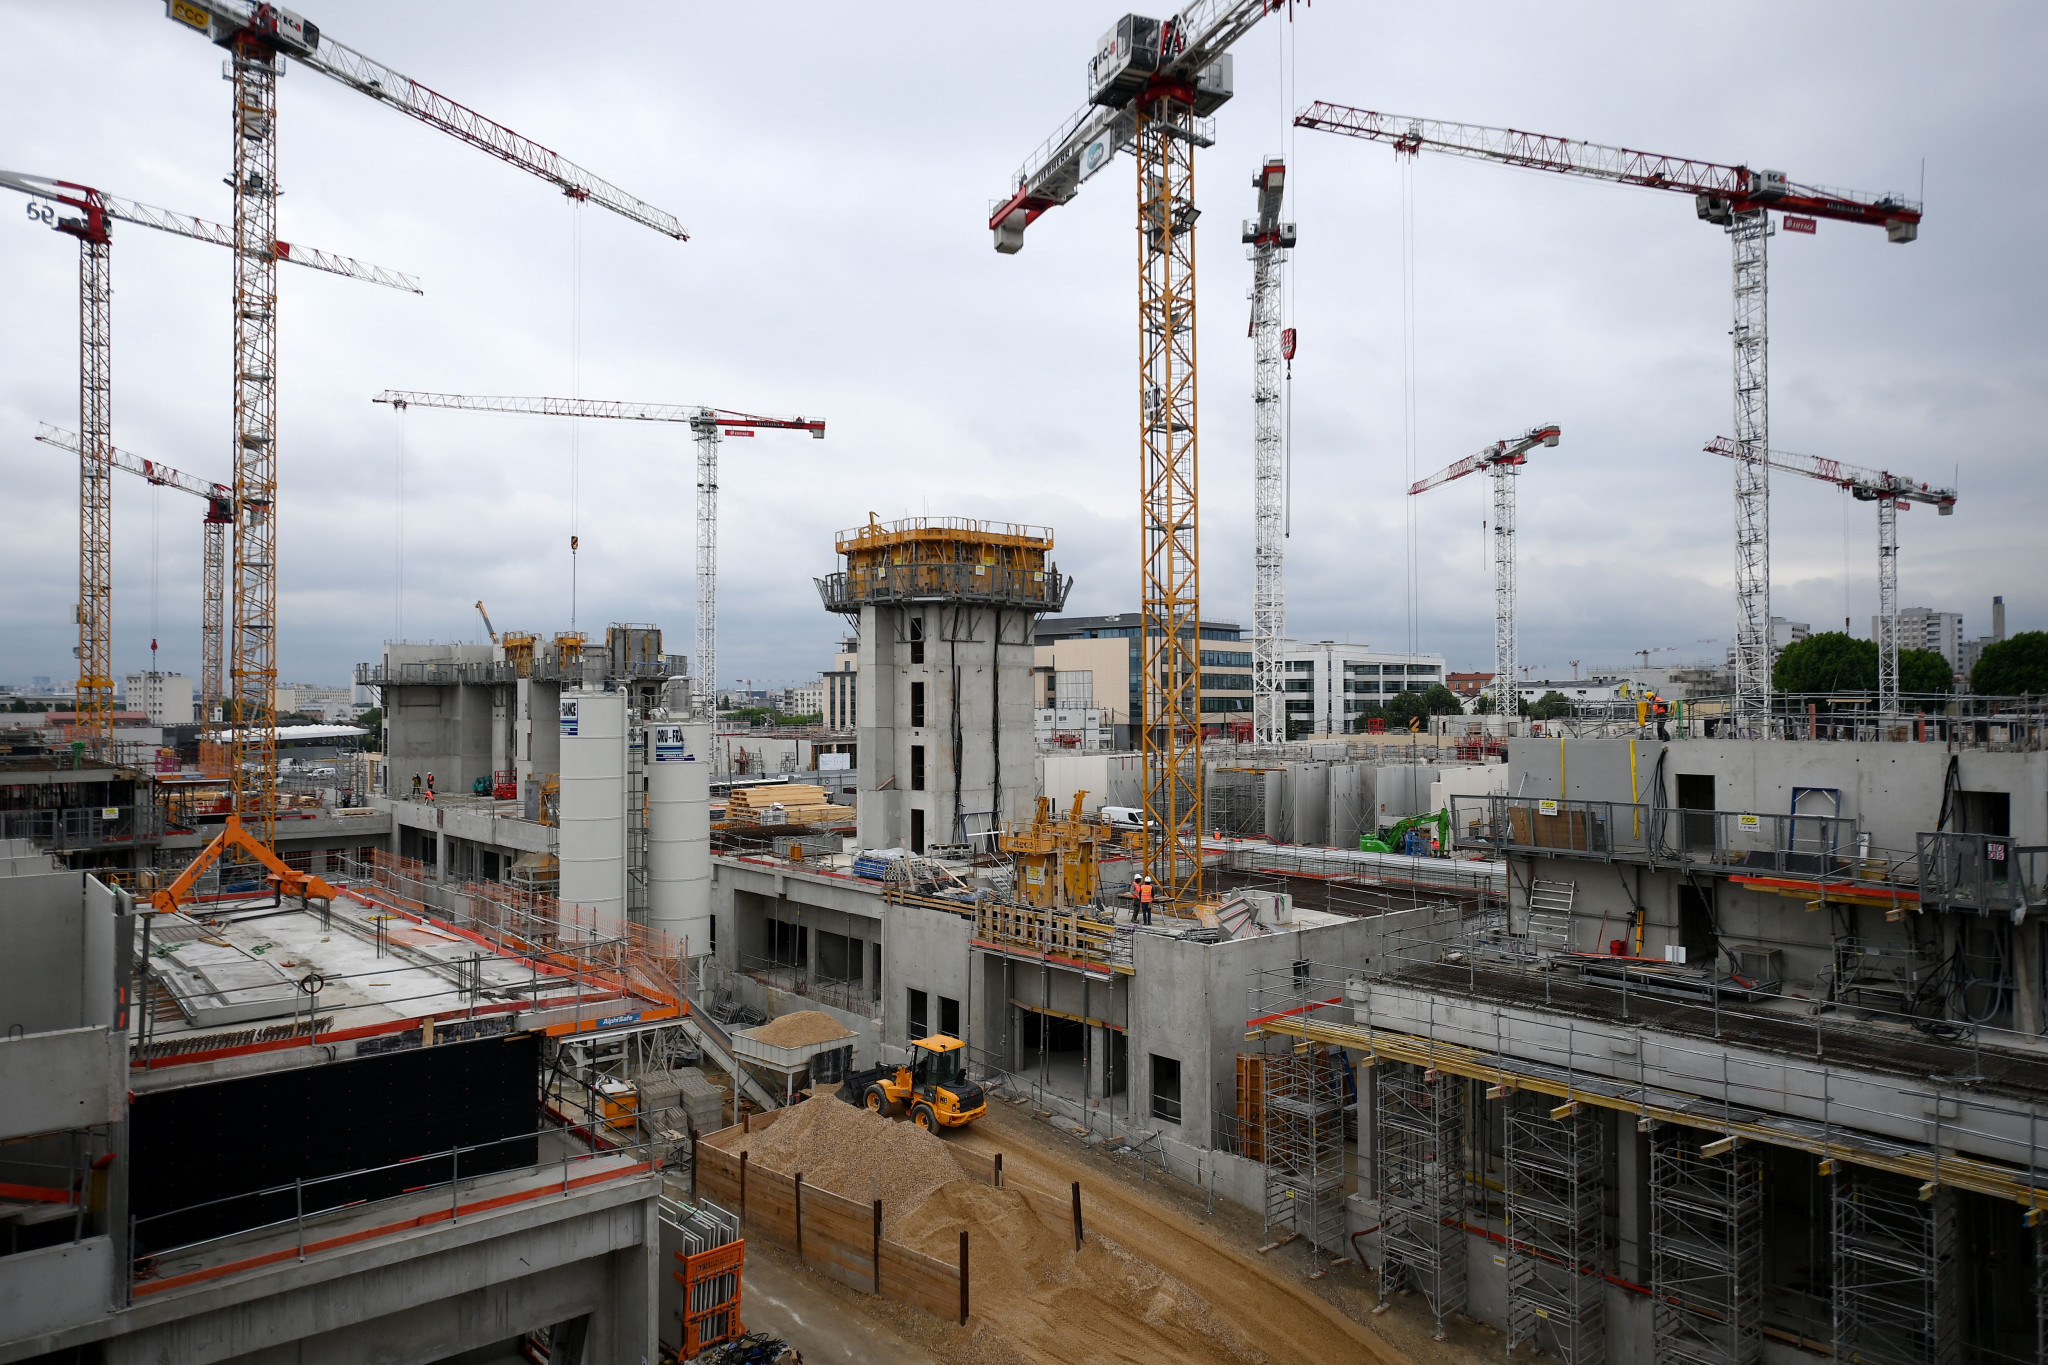 Workers set to sue construction companies after unpaid labour on Paris 2024 venues